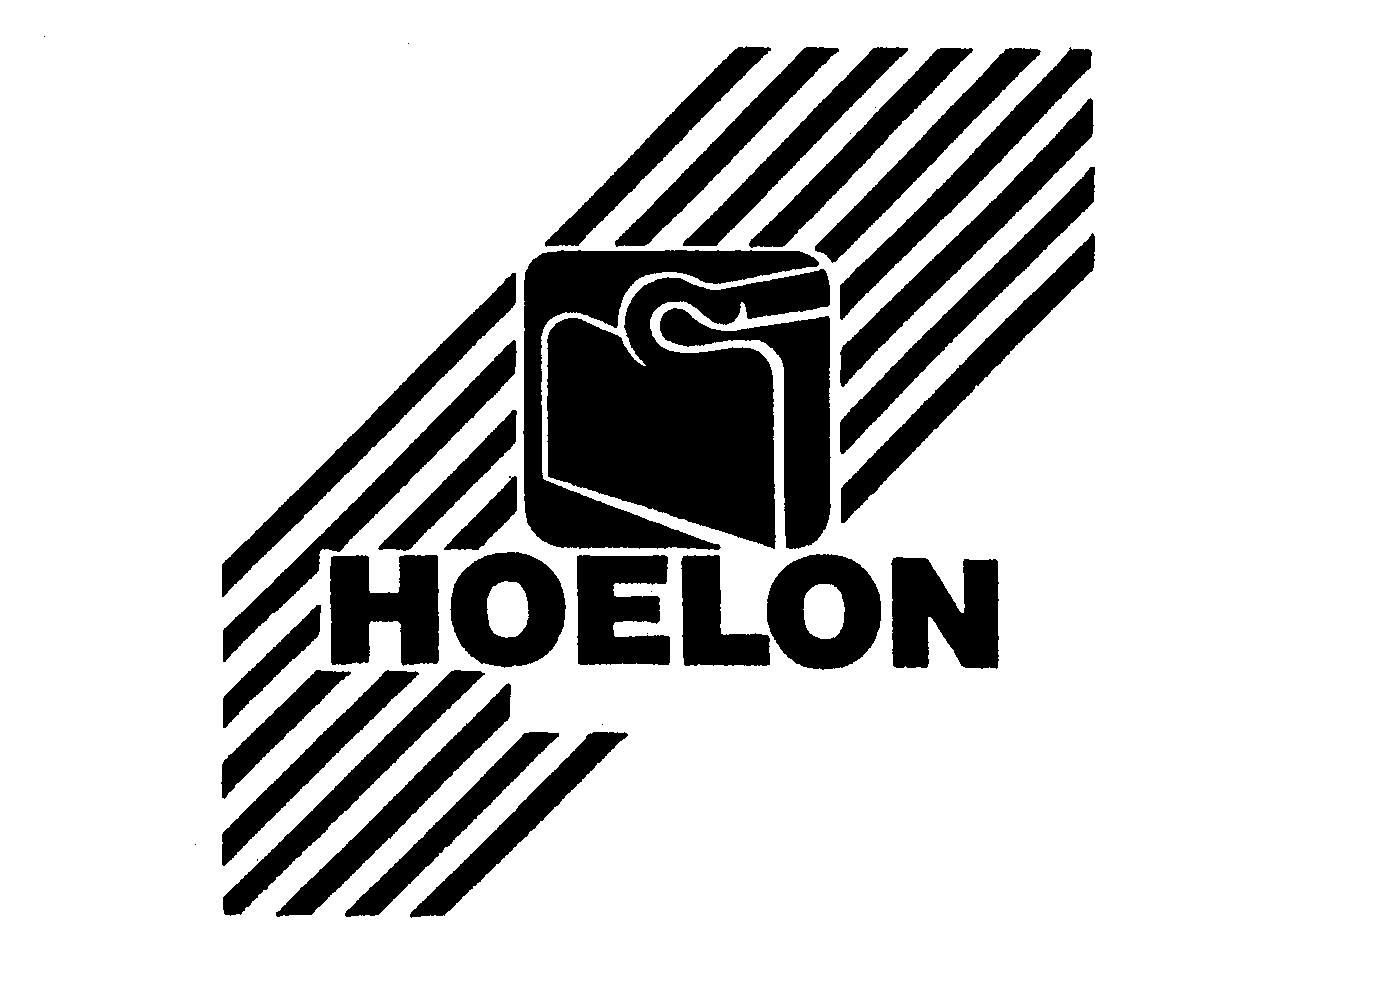  HOELON